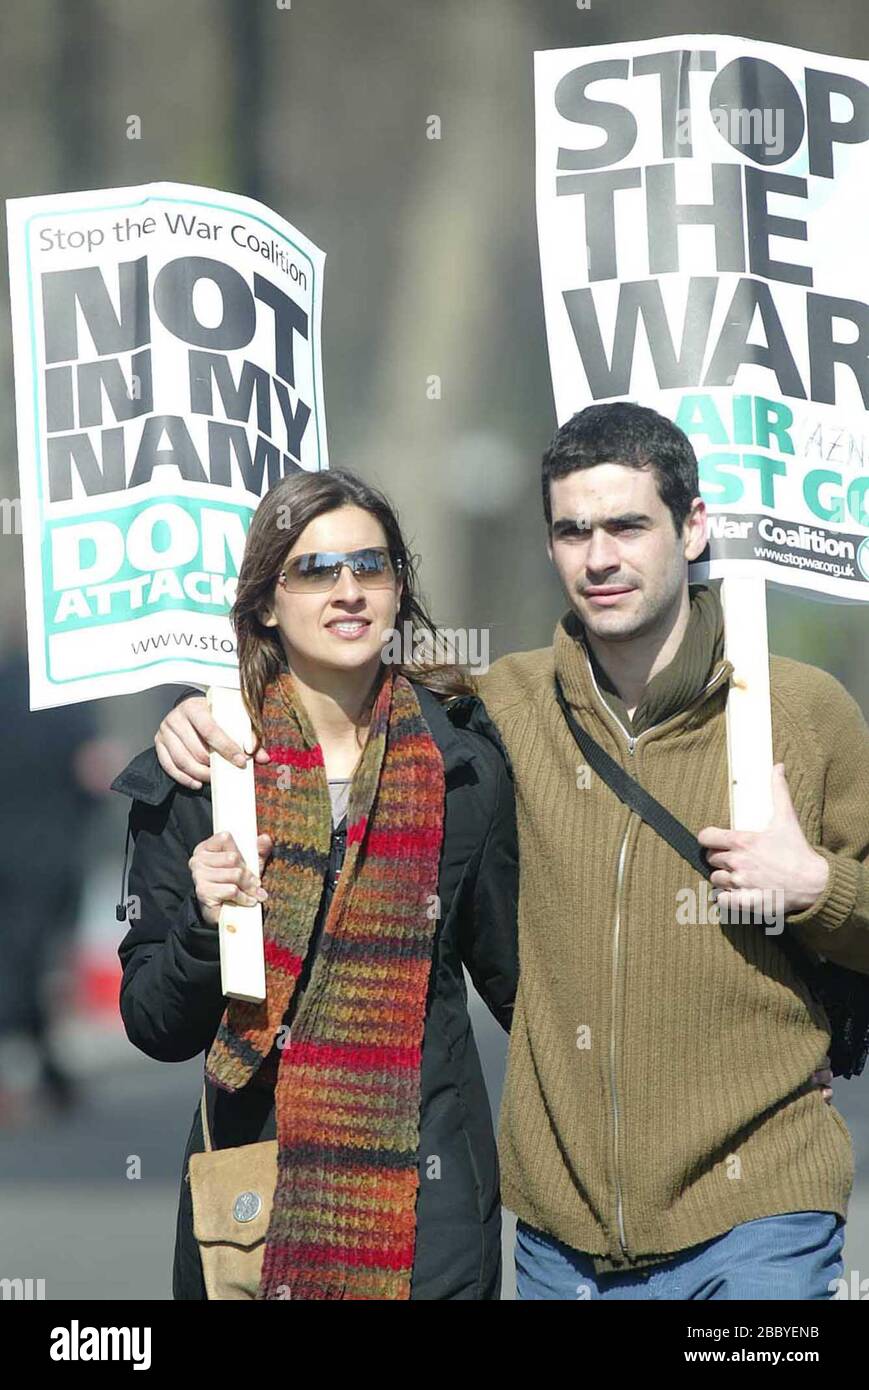 Des milliers de manifestants anti-guerre défilent dans les rues de Londres, protestant contre la guerre des Britanniques et des États-Unis en Irak. Photo de James Boardman Banque D'Images